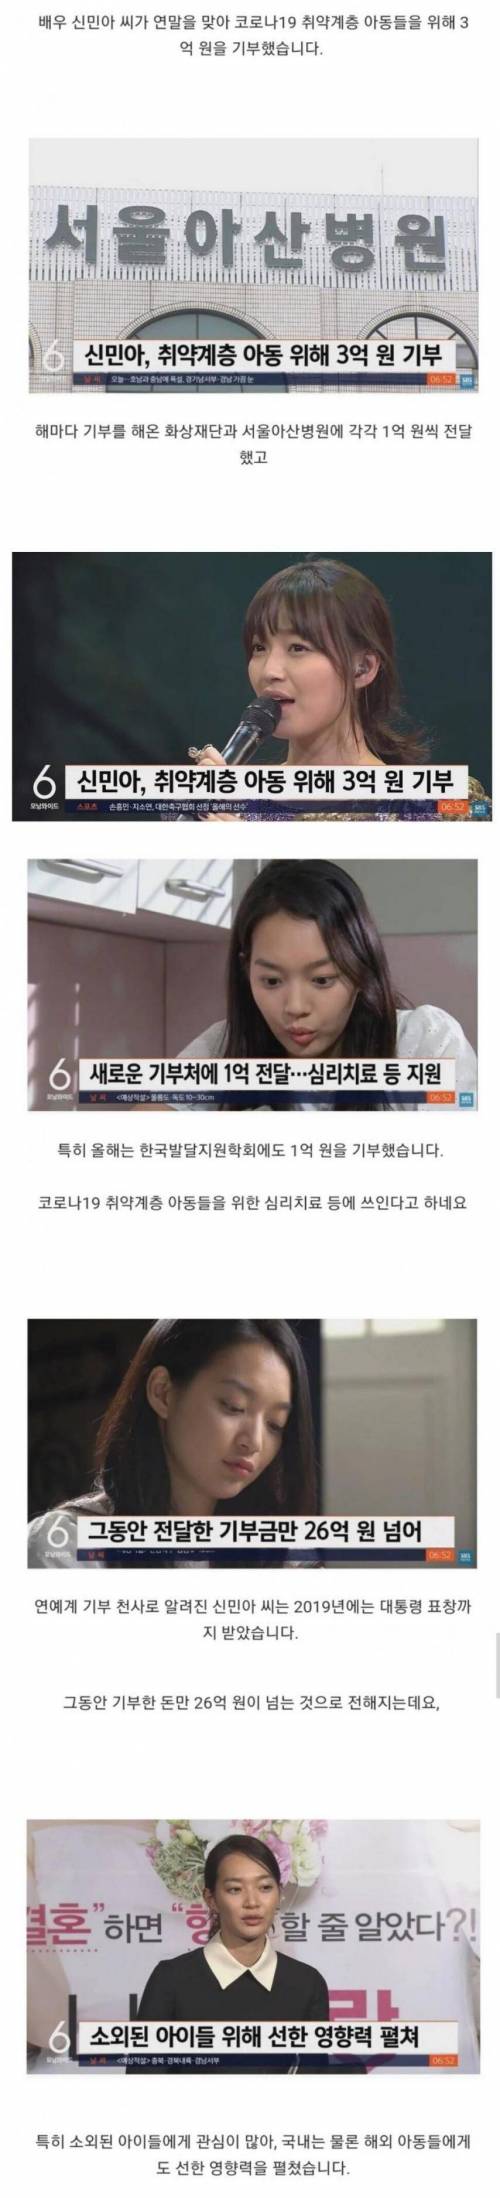 데뷔 후 26억원을 써버린 여자 배우.